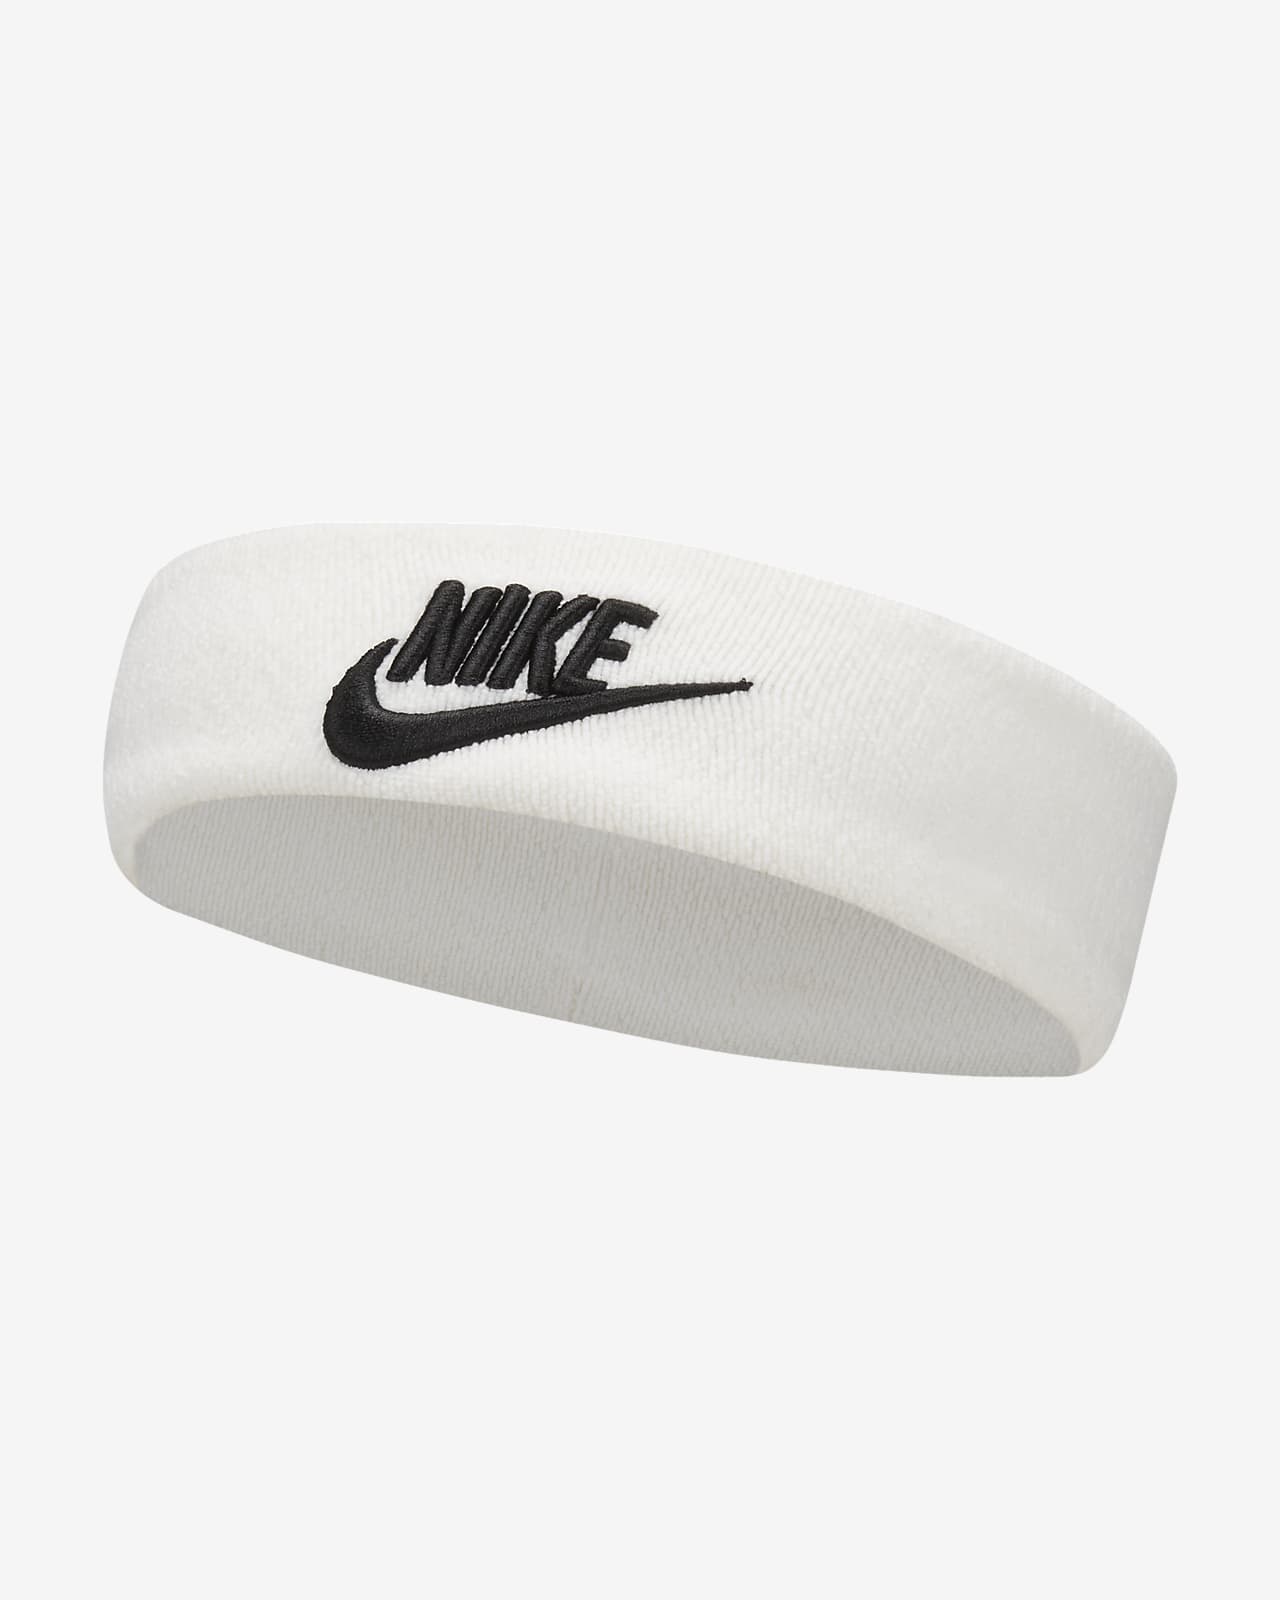 Nike Stirnbänder und Handschuhe Set Handschuhe + 092 Band, Sportbekleidung, Das offizielle Archiv Merkandi